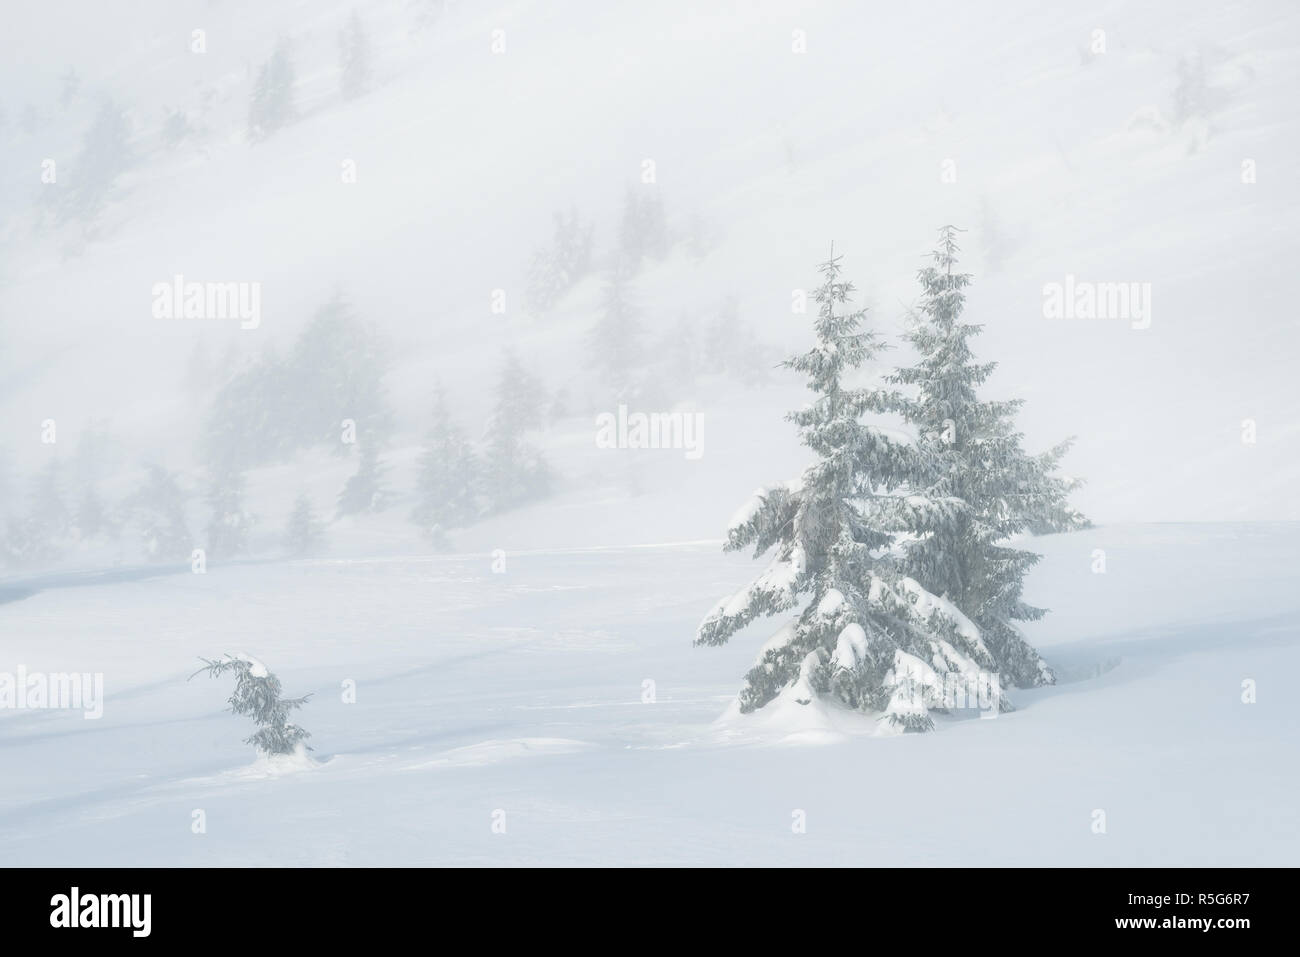 L'hiver dans une vallée de montagne. Les pentes des montagnes couvertes de neige et de sapins dans le brouillard Banque D'Images